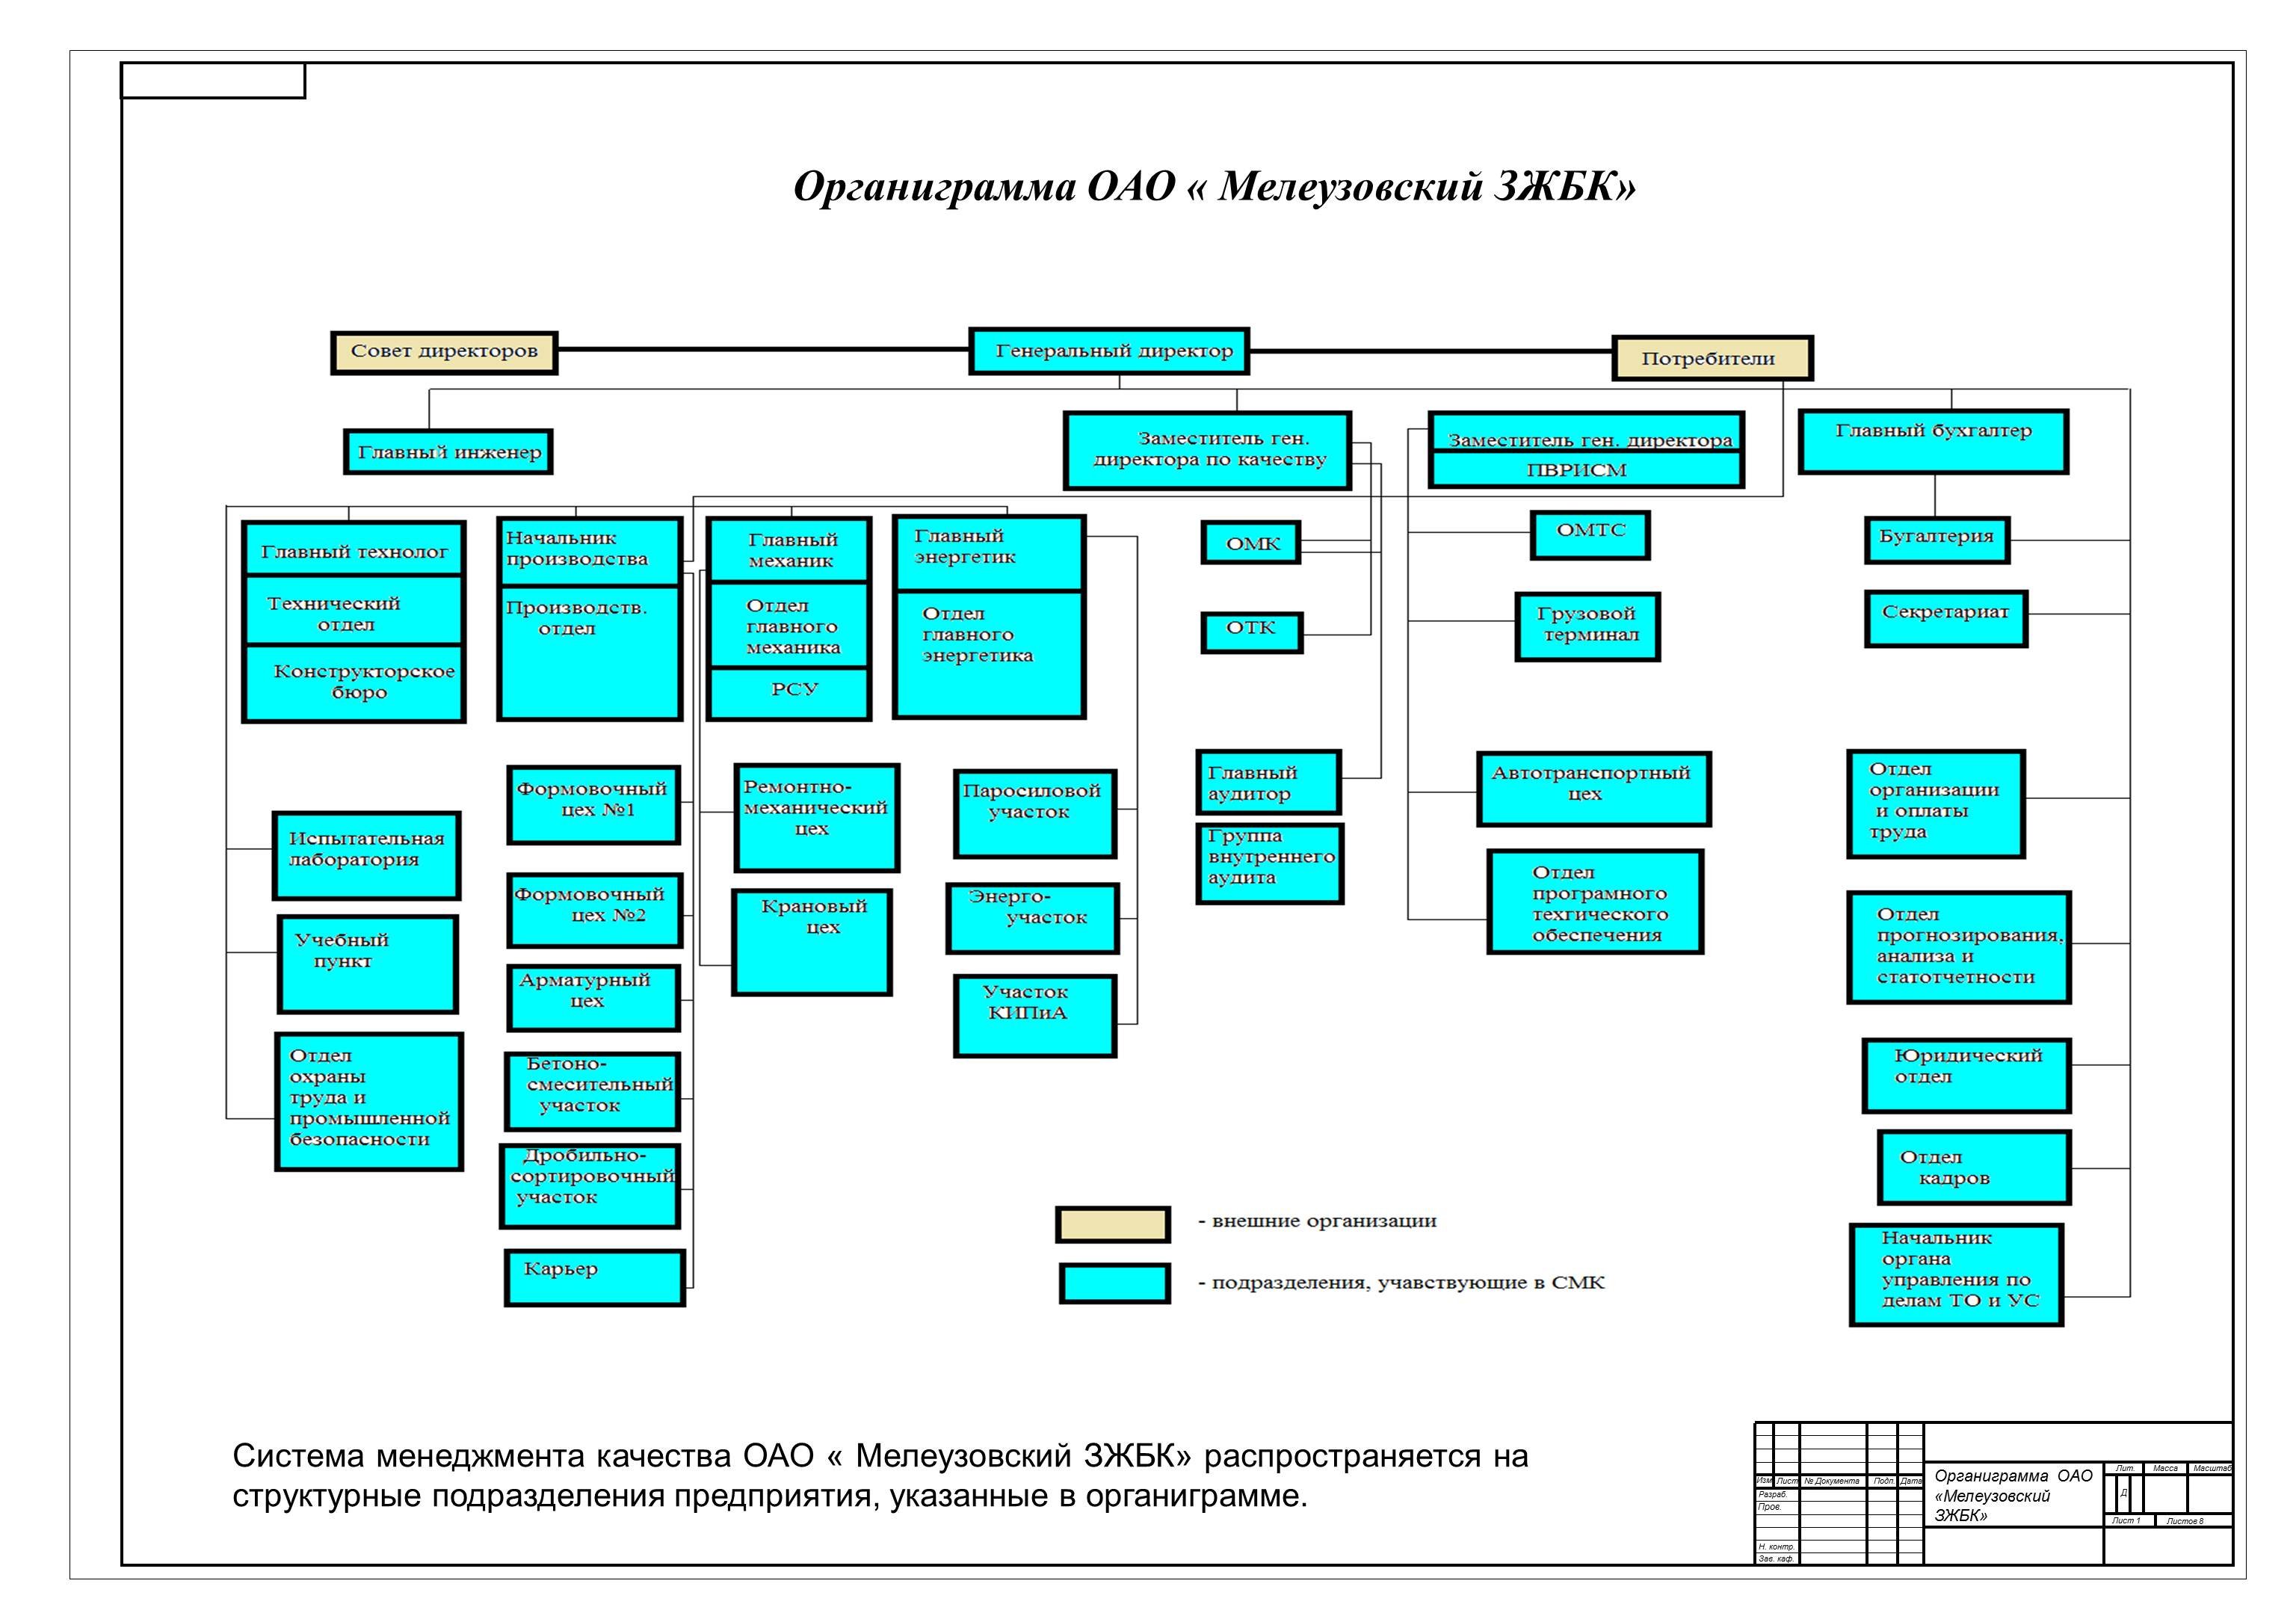 Организационная структура органиграмма